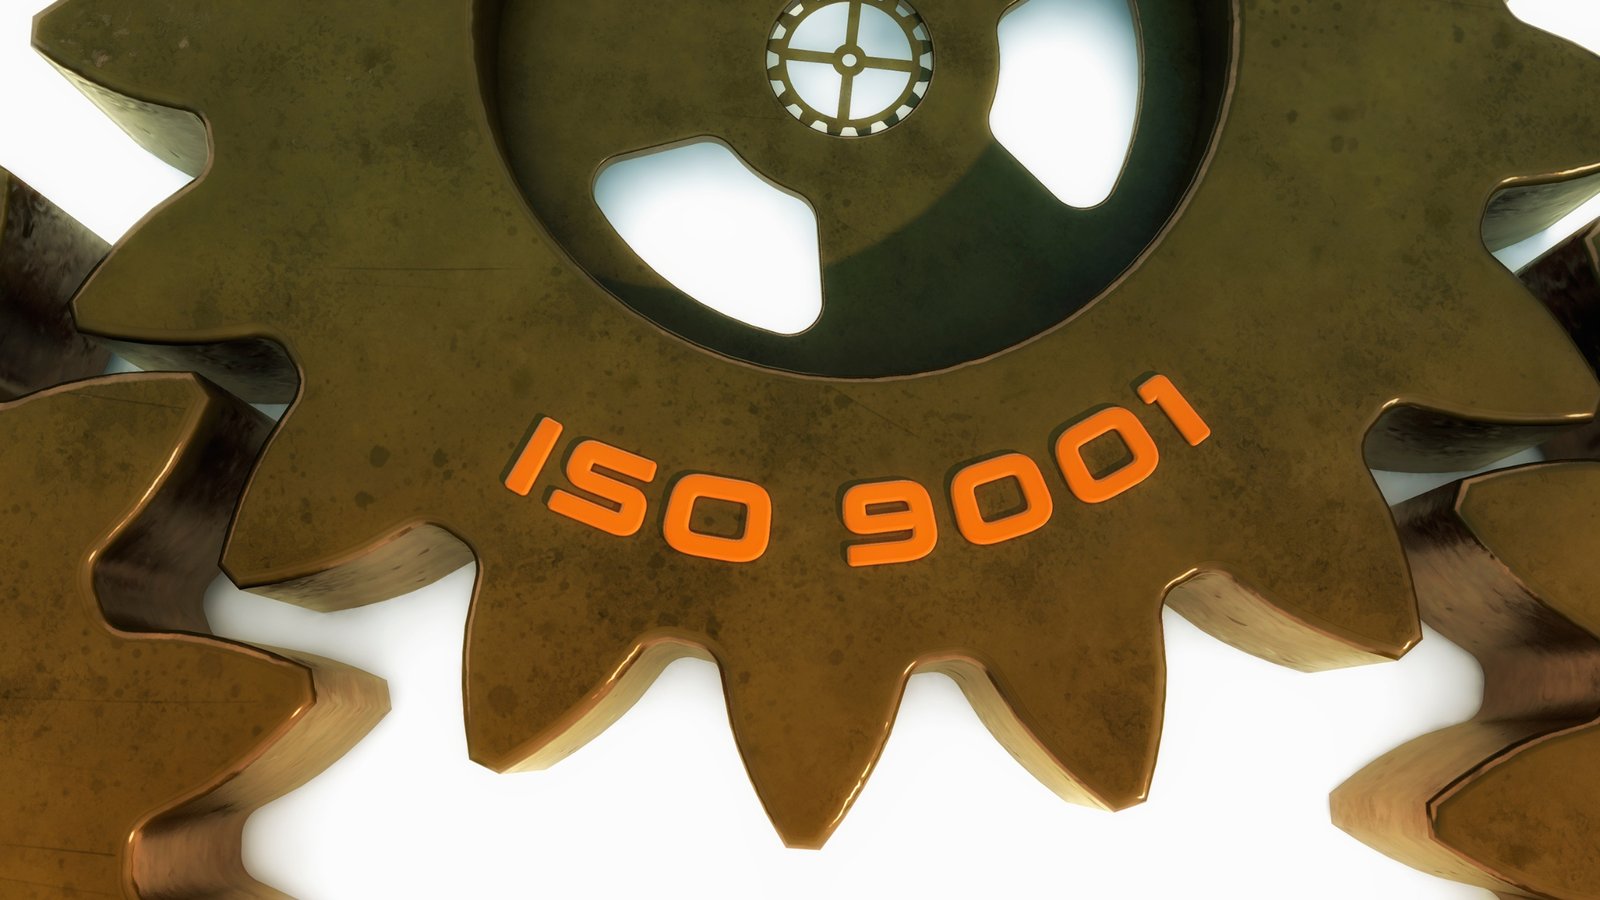 ISO 9001 y su Estructura de Alto Nivel, gestión de calidad